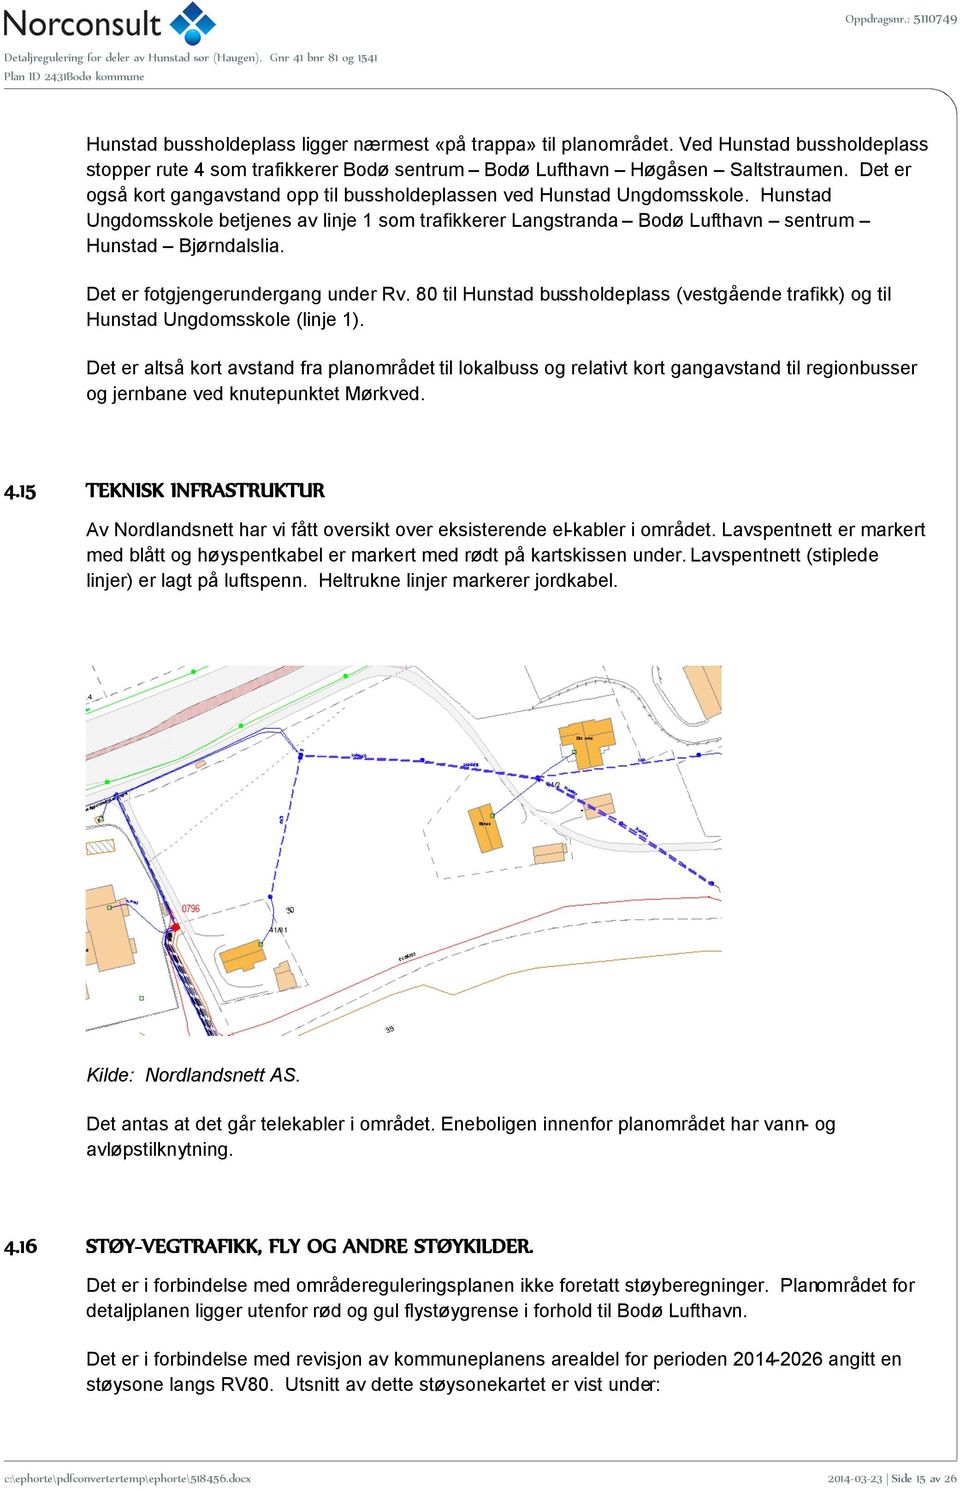 Det er fotgjengerundergang under Rv. 80 til Hunstad bussholdeplass (vestgående trafikk) og til Hunstad Ungdomsskole (linje 1).